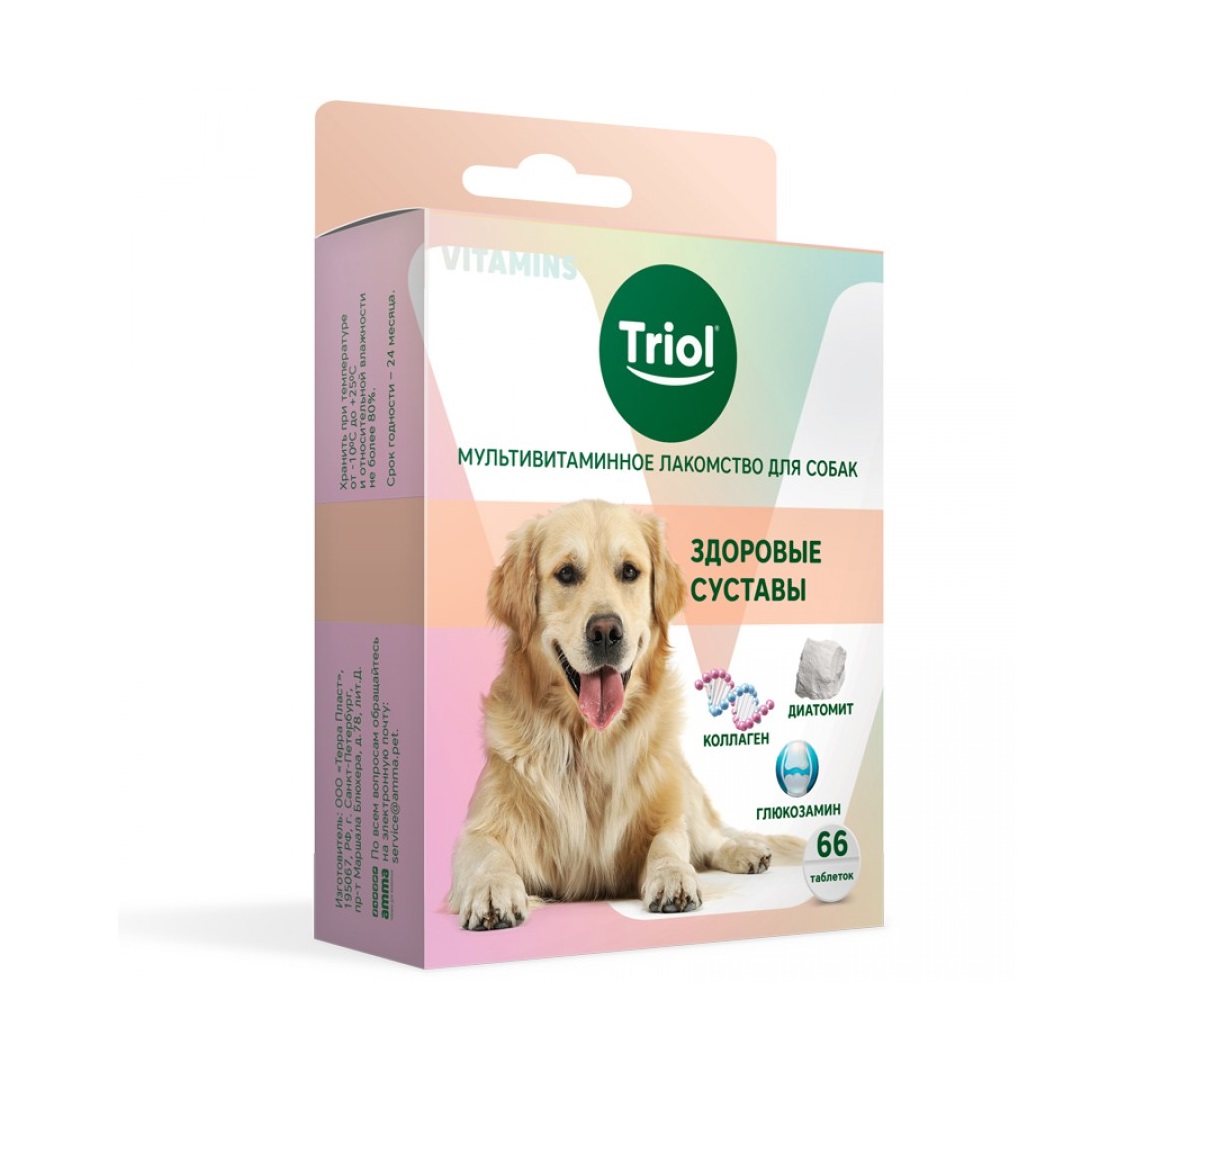 Мультивитаминное лакомство для собак 33гр - Здоровые суставы (Triol) + Подарок